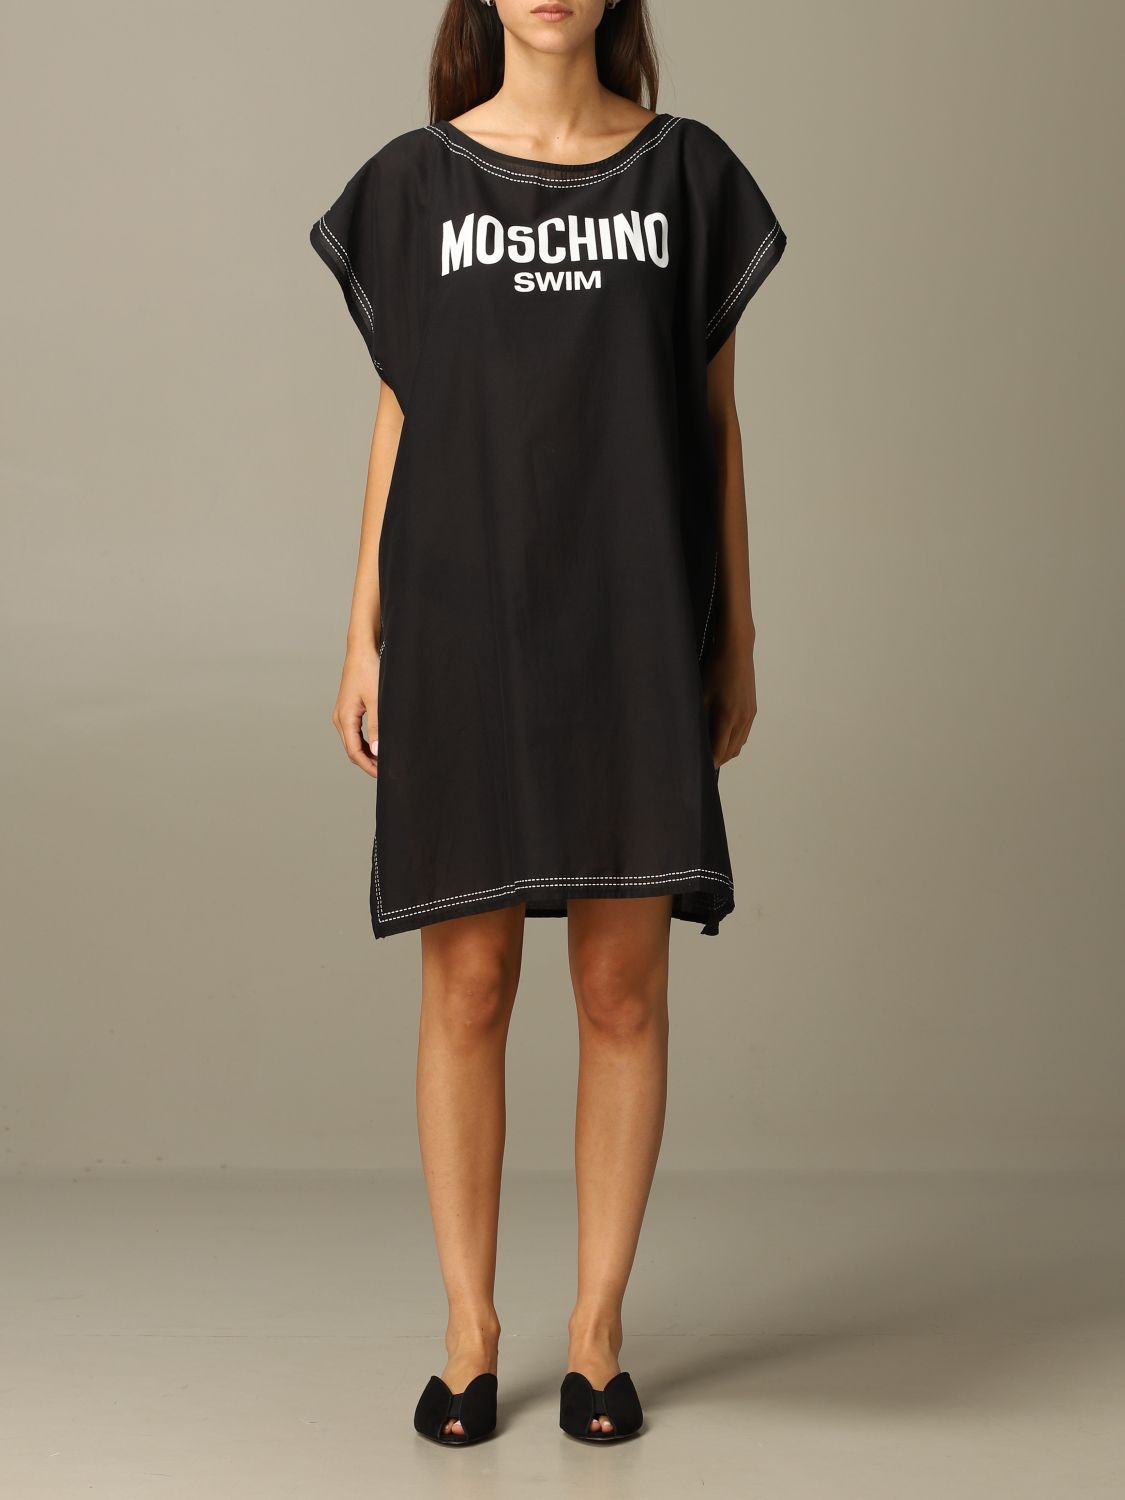 Moschino Underwear Outlet: dress for woman - Black | Moschino Underwear ...